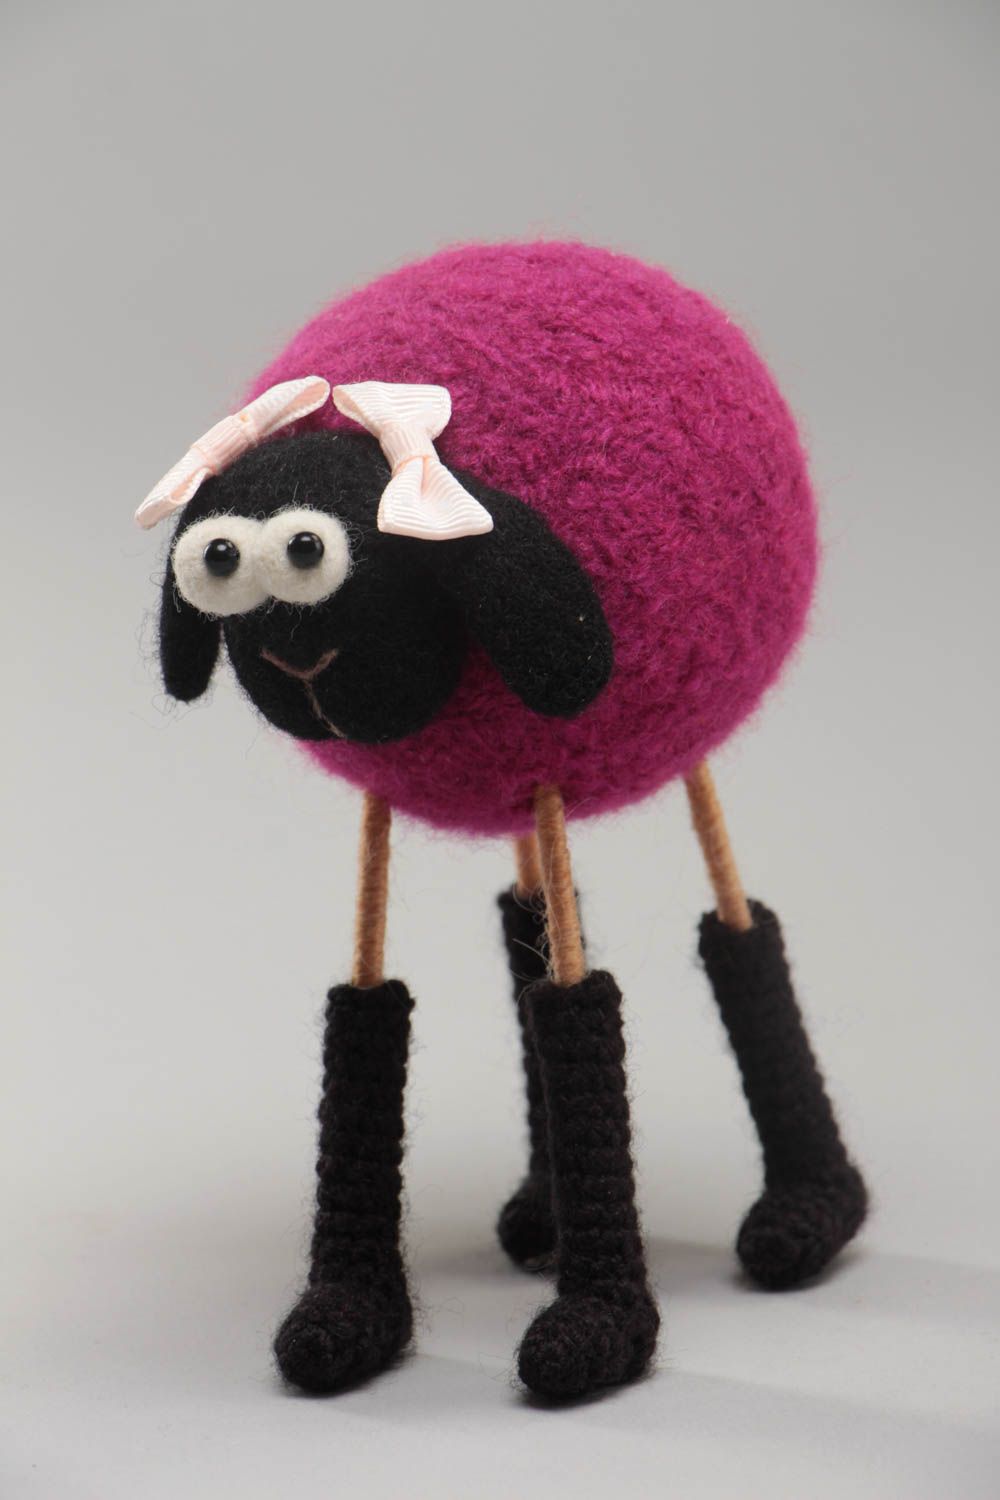 Мягкая вязаная игрушка овечка ручной работы авторская красивая малиновая с черным фото 2